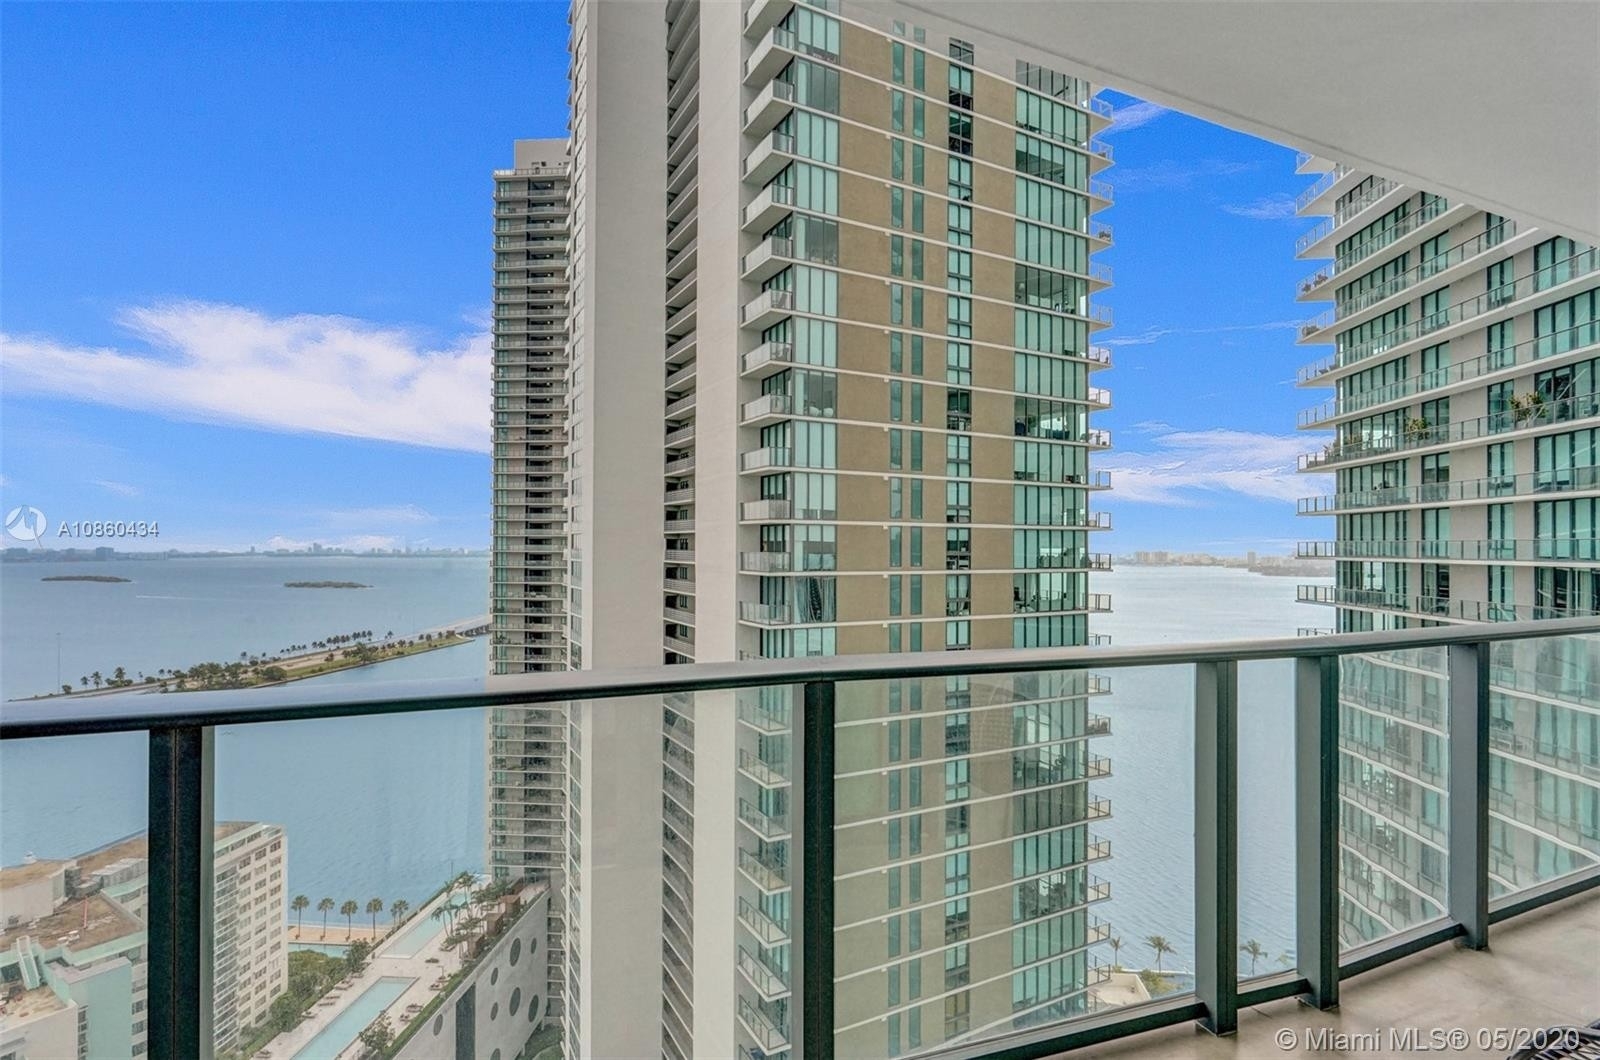 6. Condominiums at 501 NE 31st St , 2906 Paraiso Bay, Miami